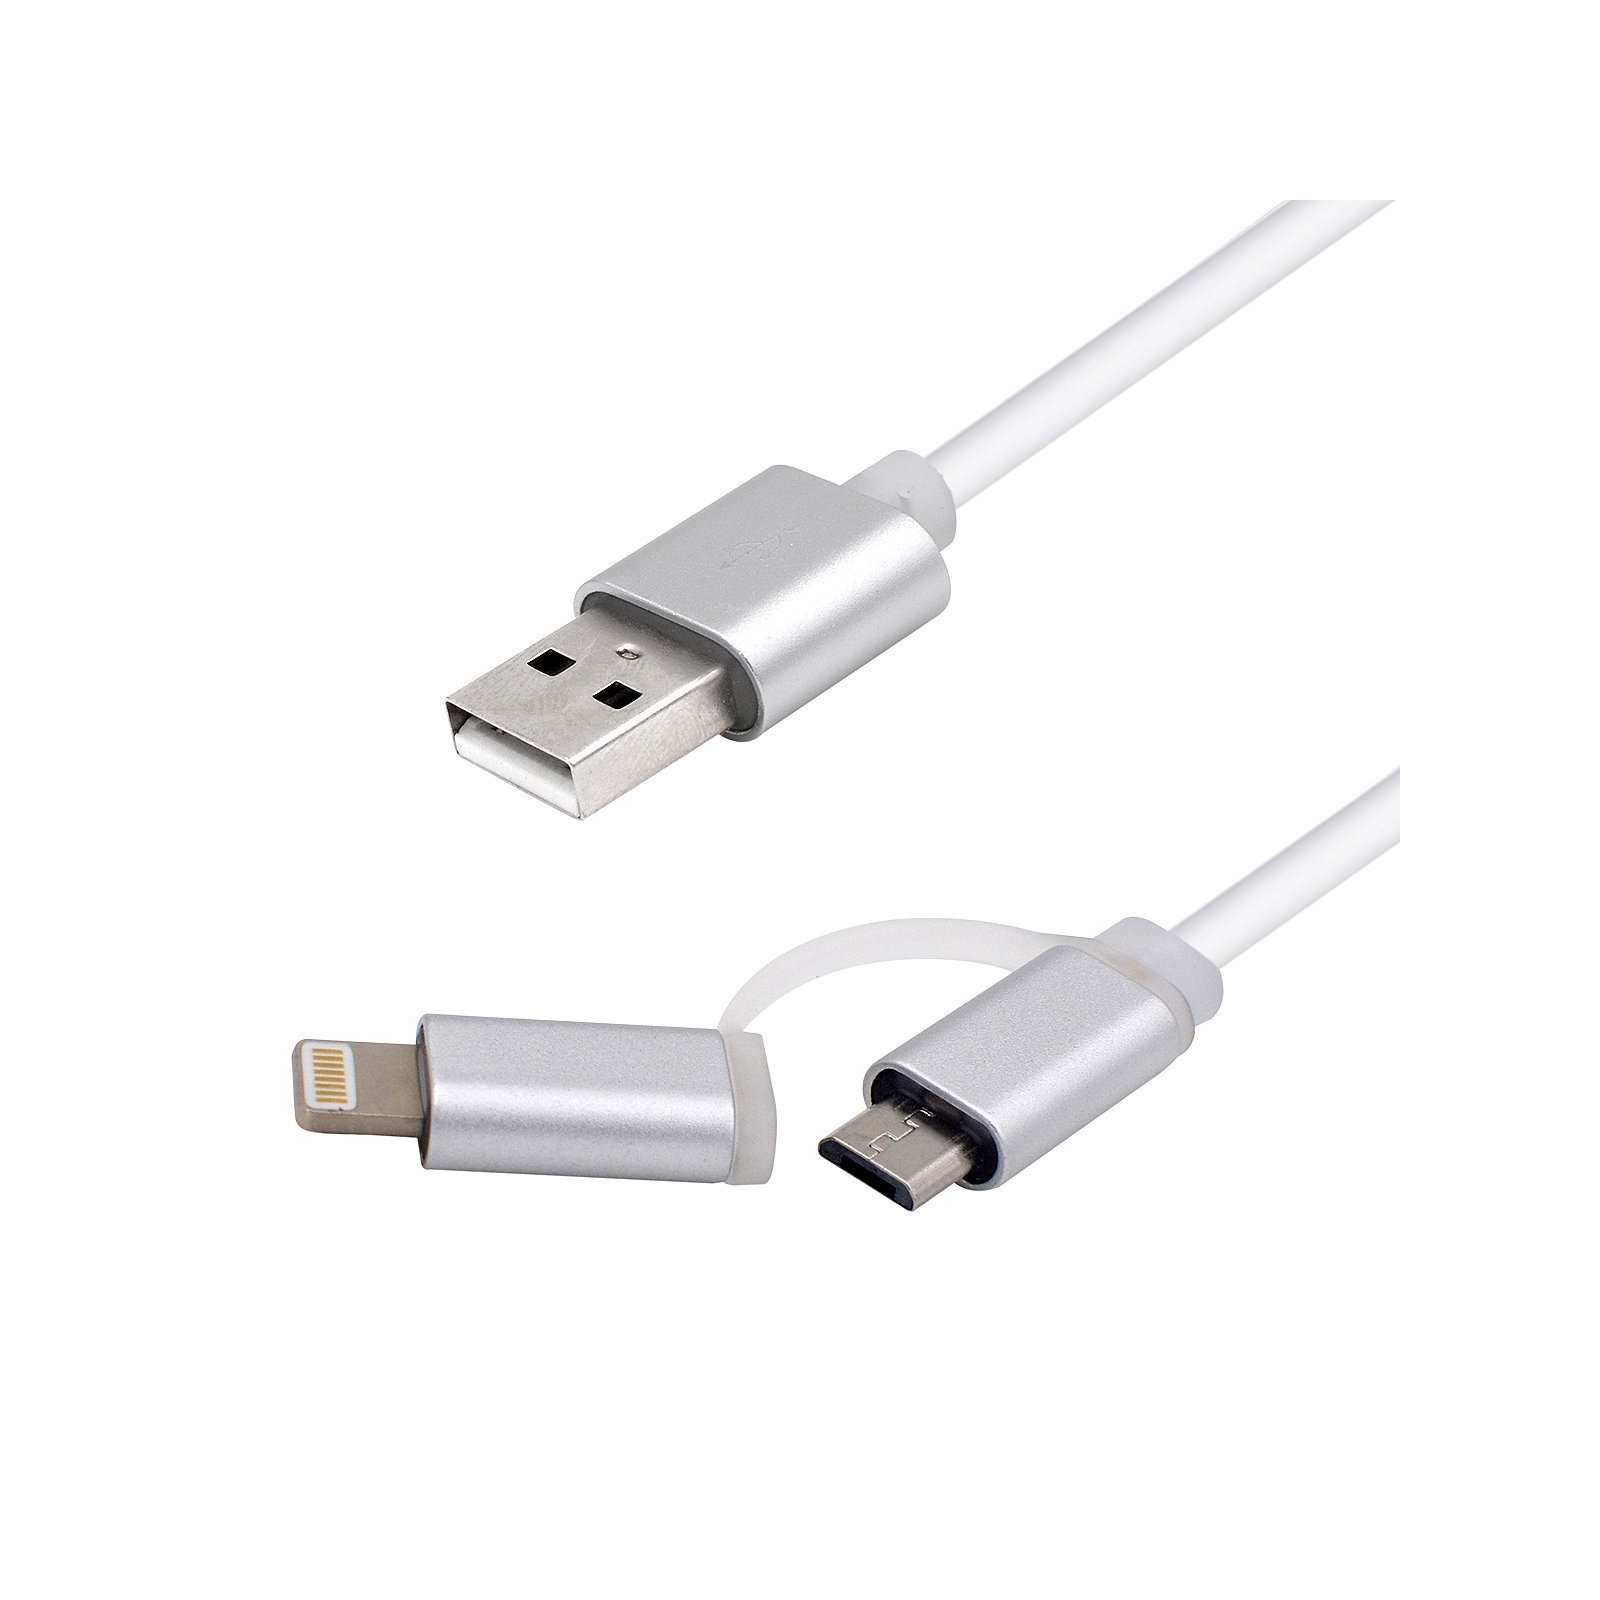 Дата кабель USB 2.0 AM to Micro 5P&Lightning 1.0m Vinga (USBAMMICRO&Lightning-1.0) изображение 6